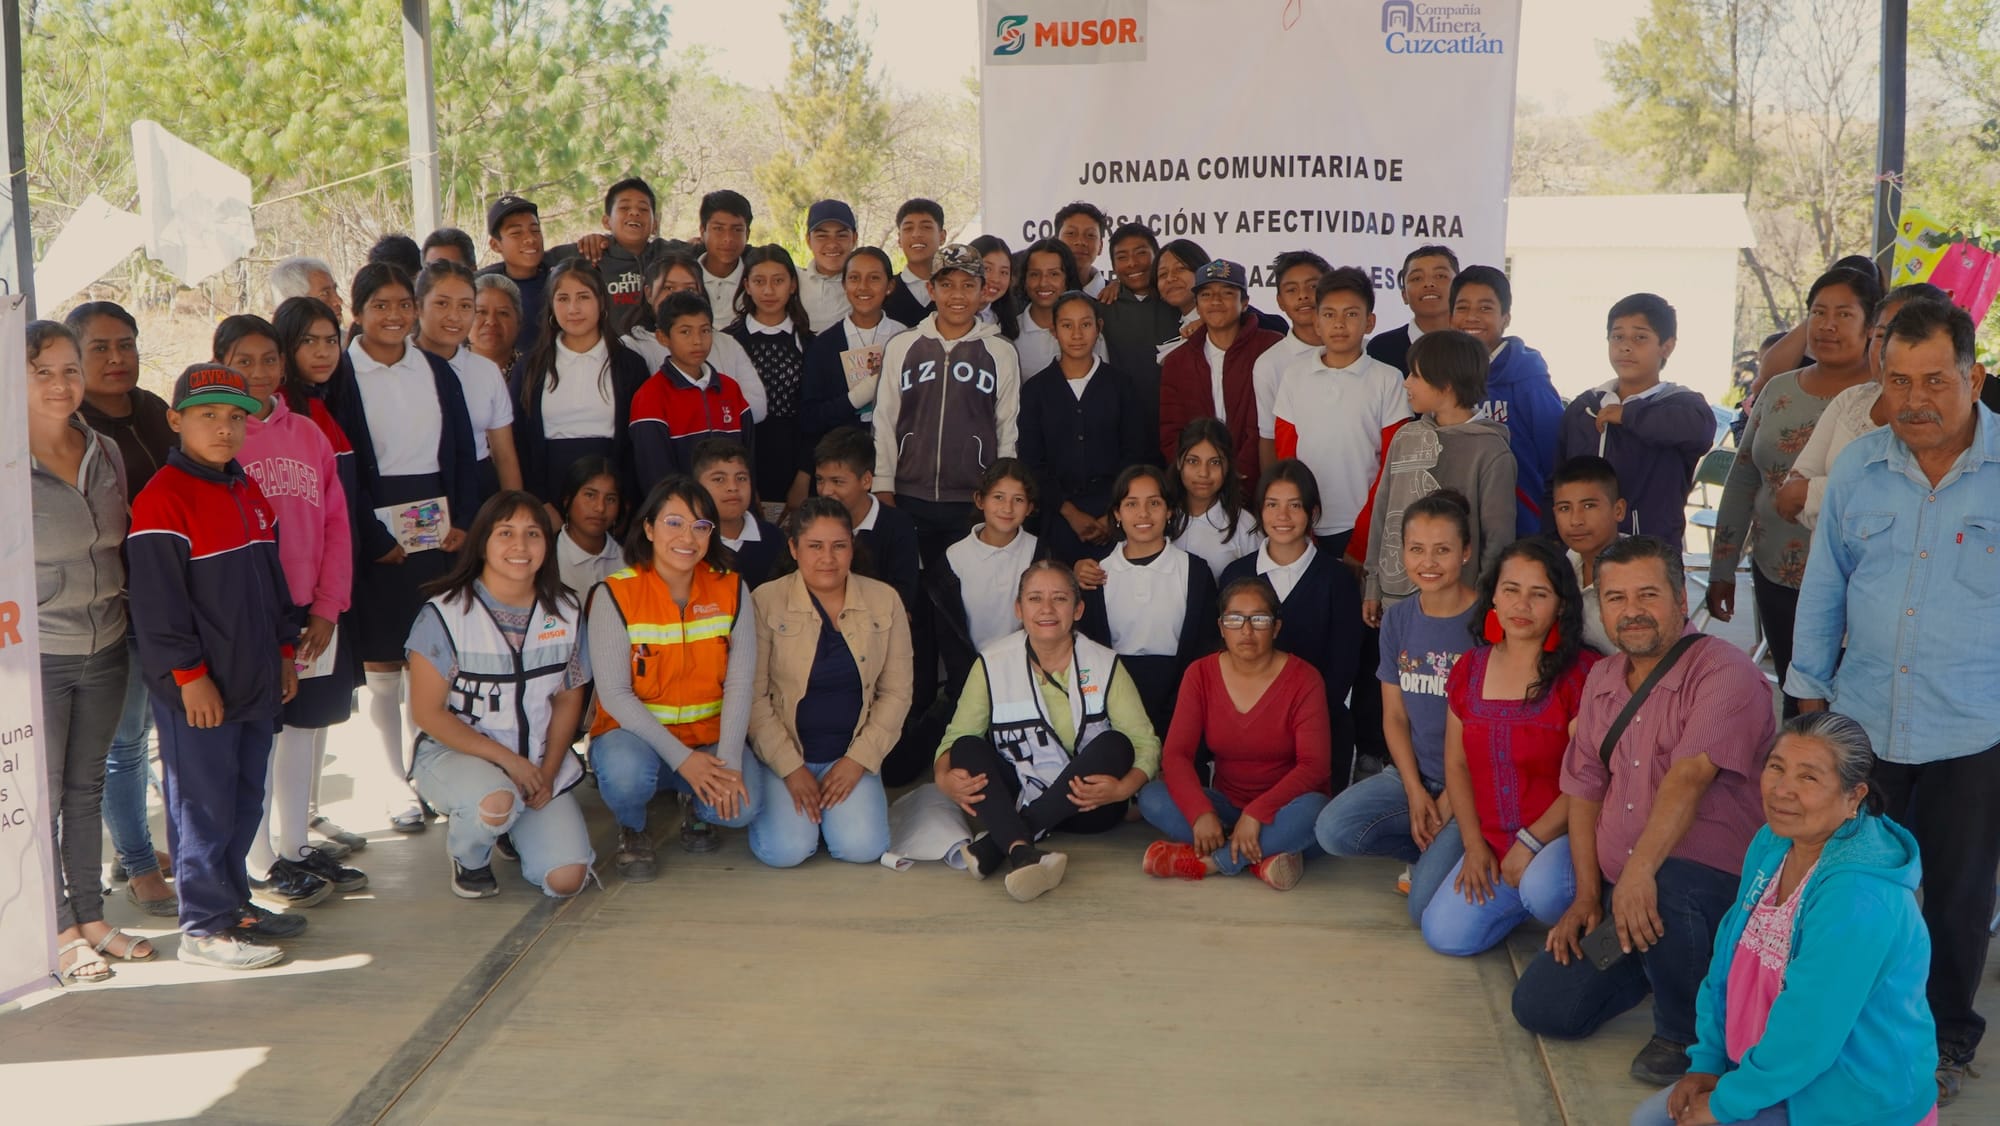 Compañía Minera Cuzcatlán contribuye a la formación integral de niños y adolescentes